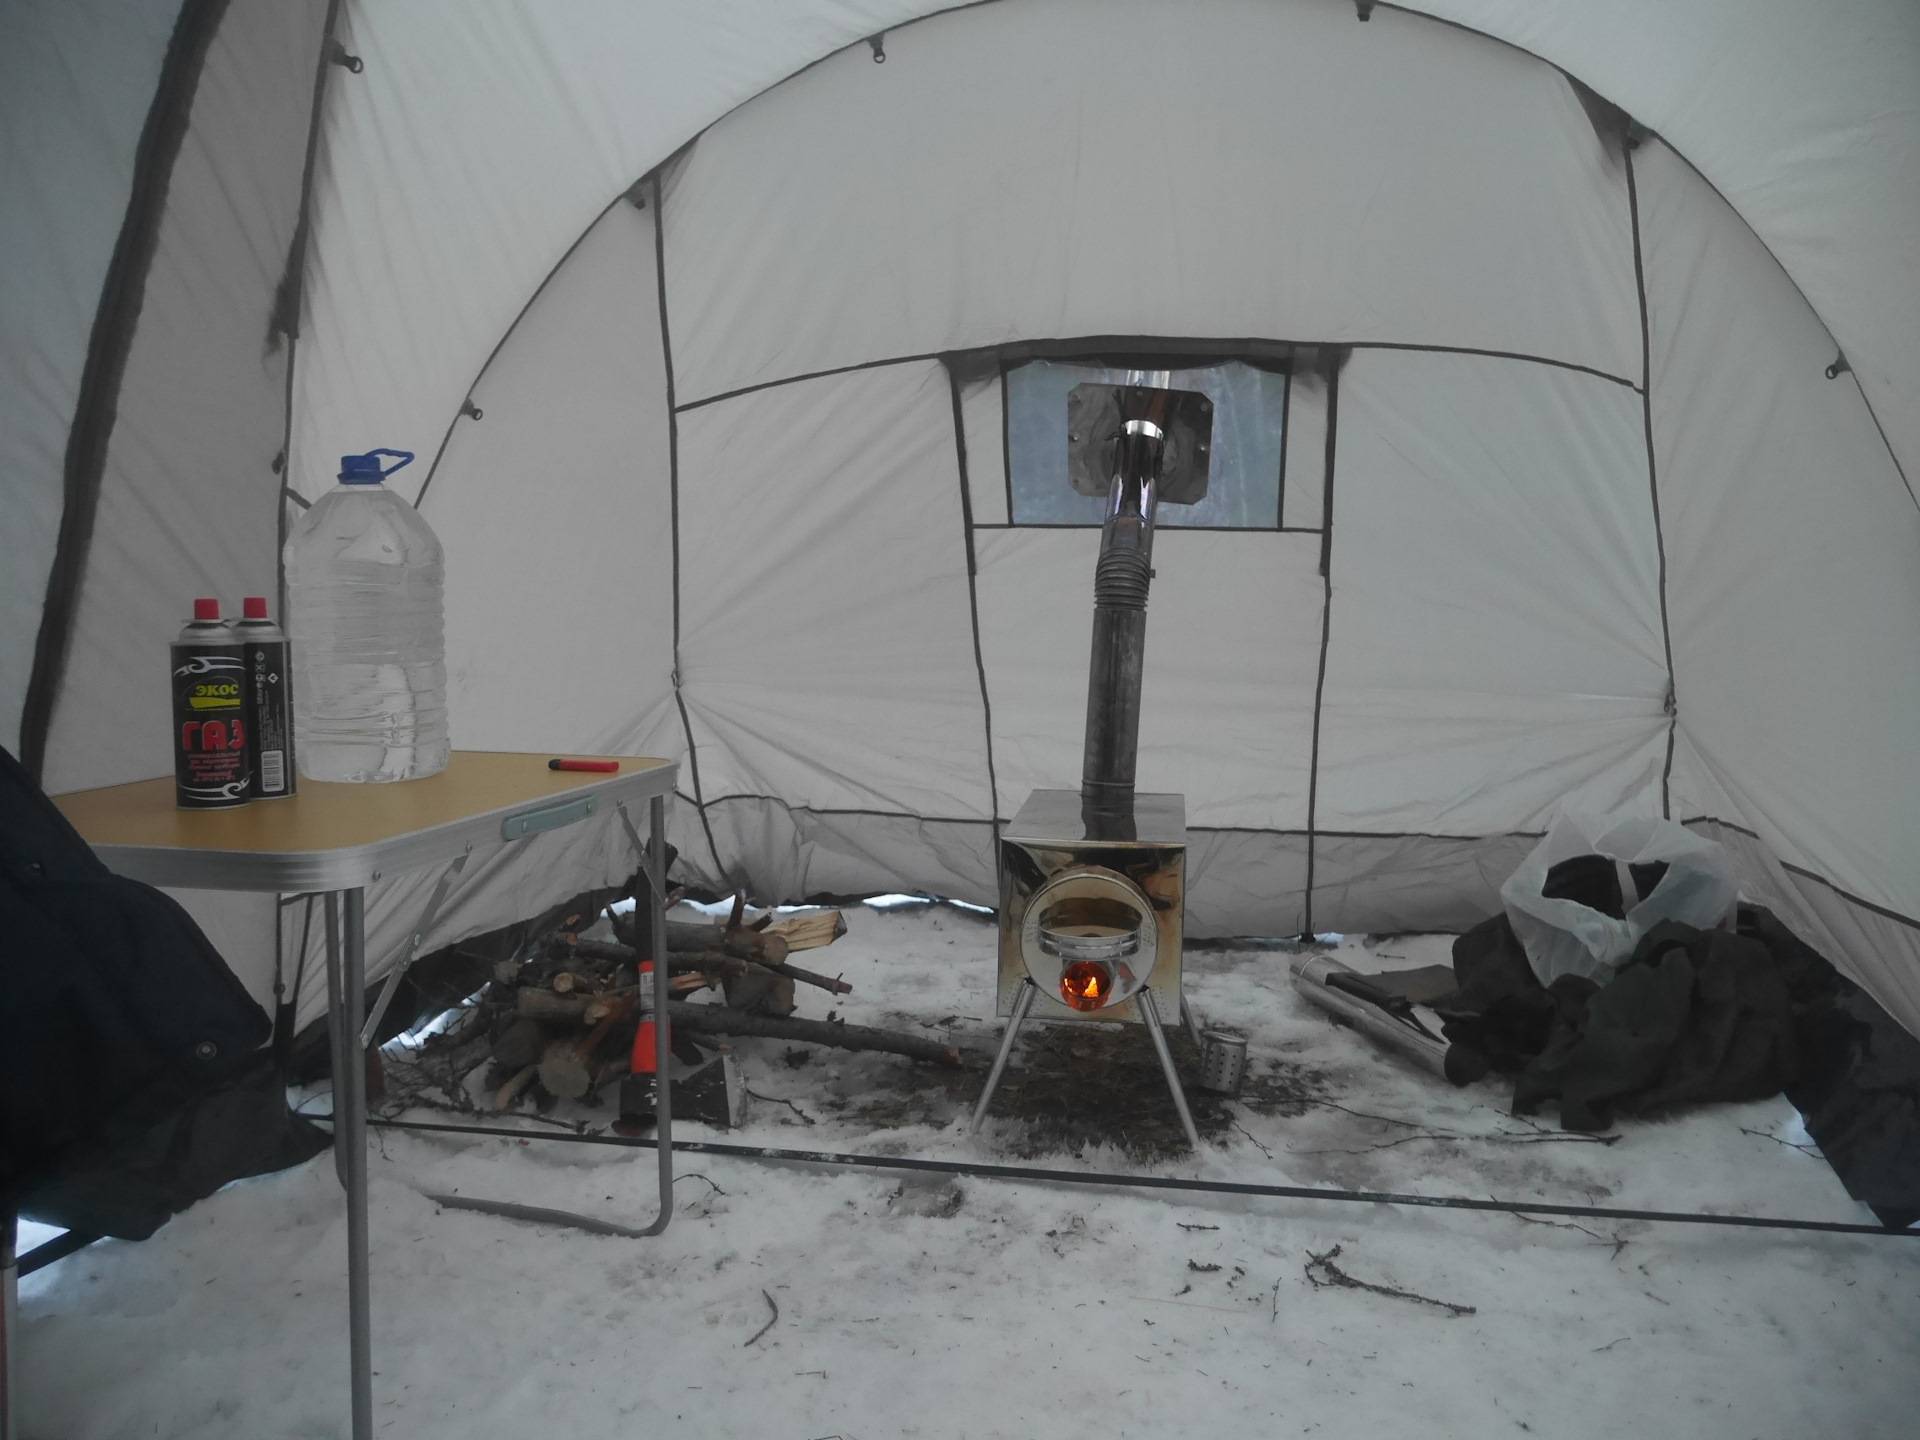 Как выбрать хорошую палатку для зимней рыбалки и заниматься любимым делом с комфортом